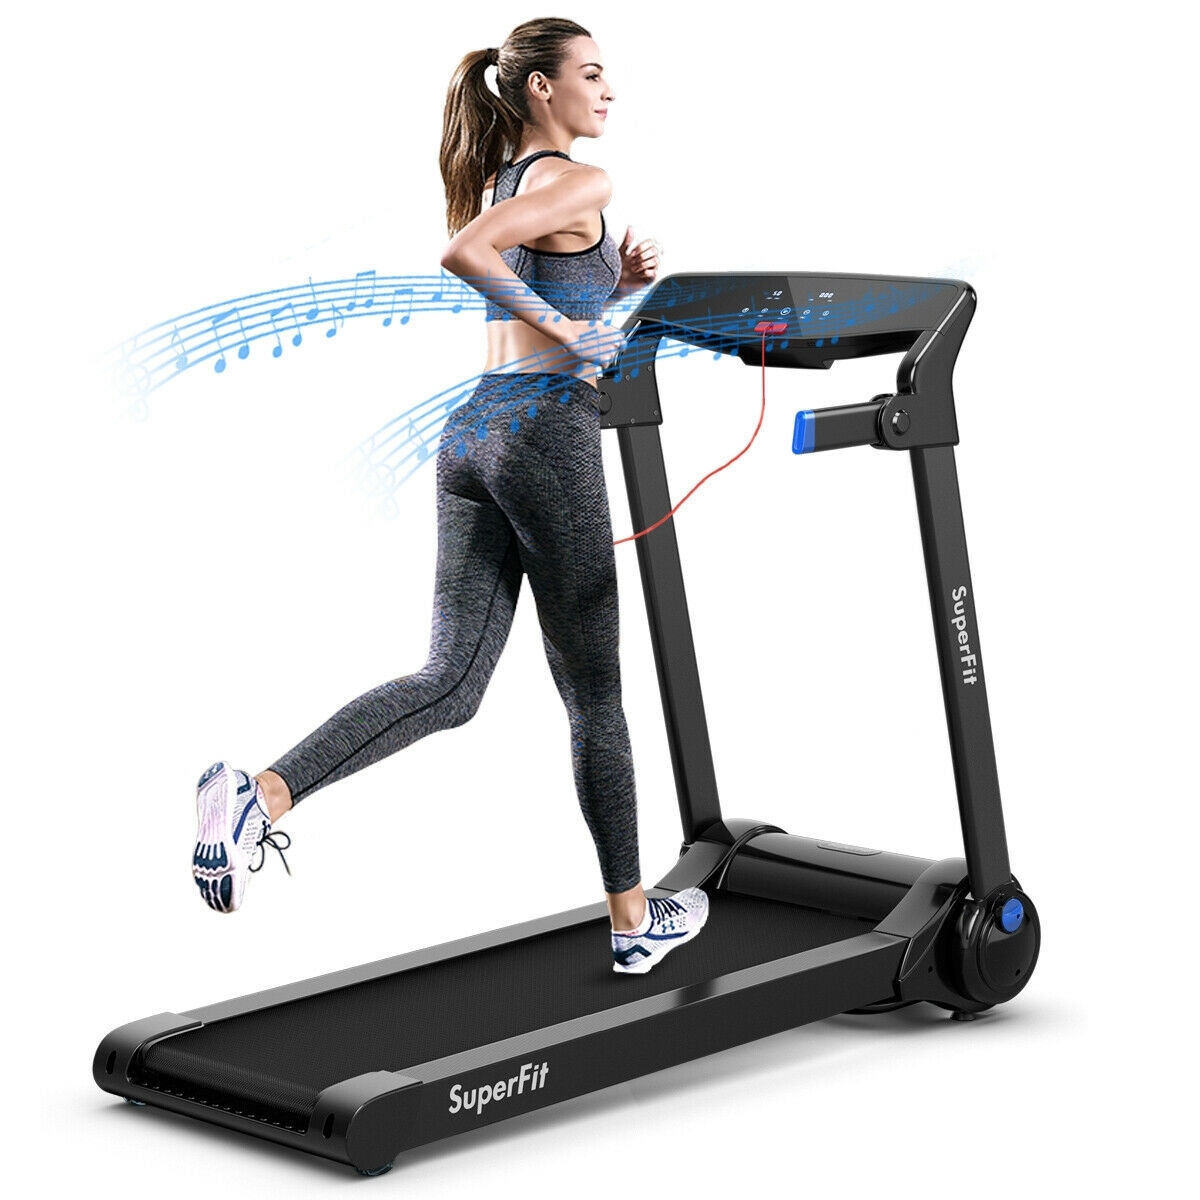 Bowflex Treadmill Without Wifi 